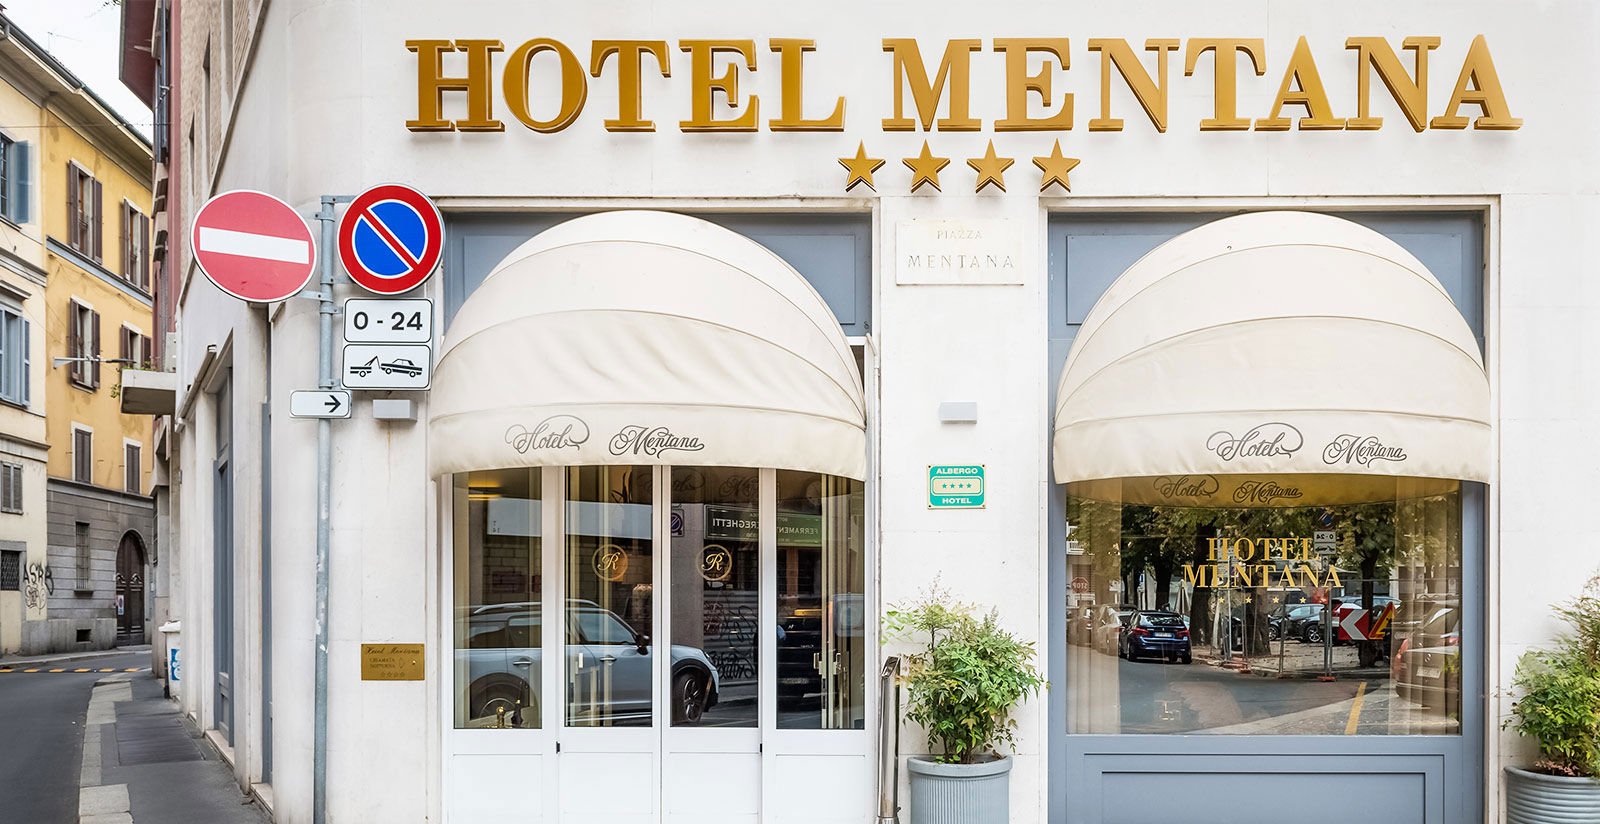 Hotel Mentana - 4 star hotel near Sforza Castle 4